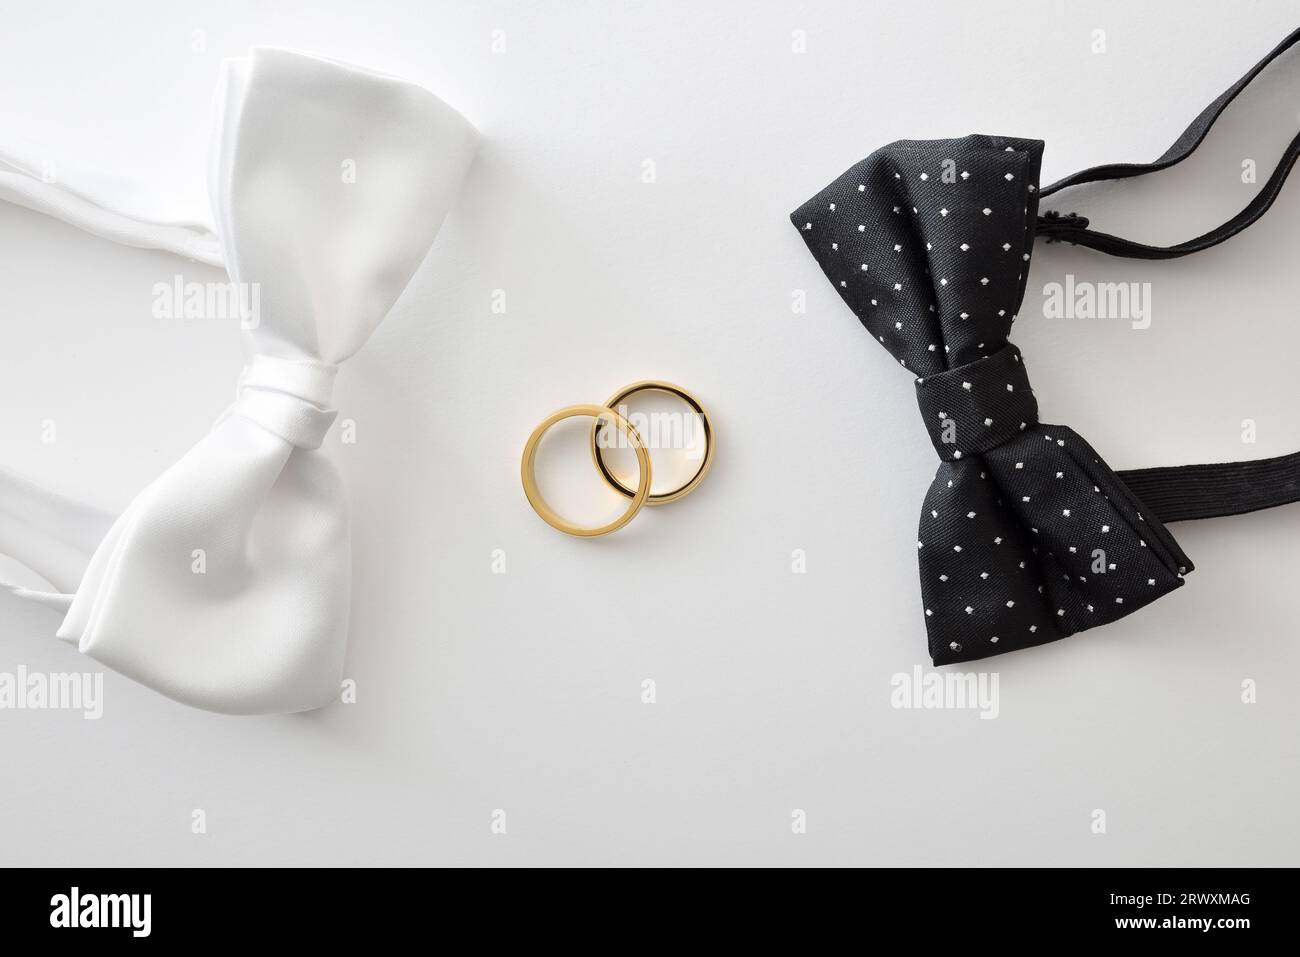 Concept de mariage gay avec noeud papillon noir avec pois et blanc sur les côtés des anneaux de mariage au centre. Vue de dessus. Banque D'Images